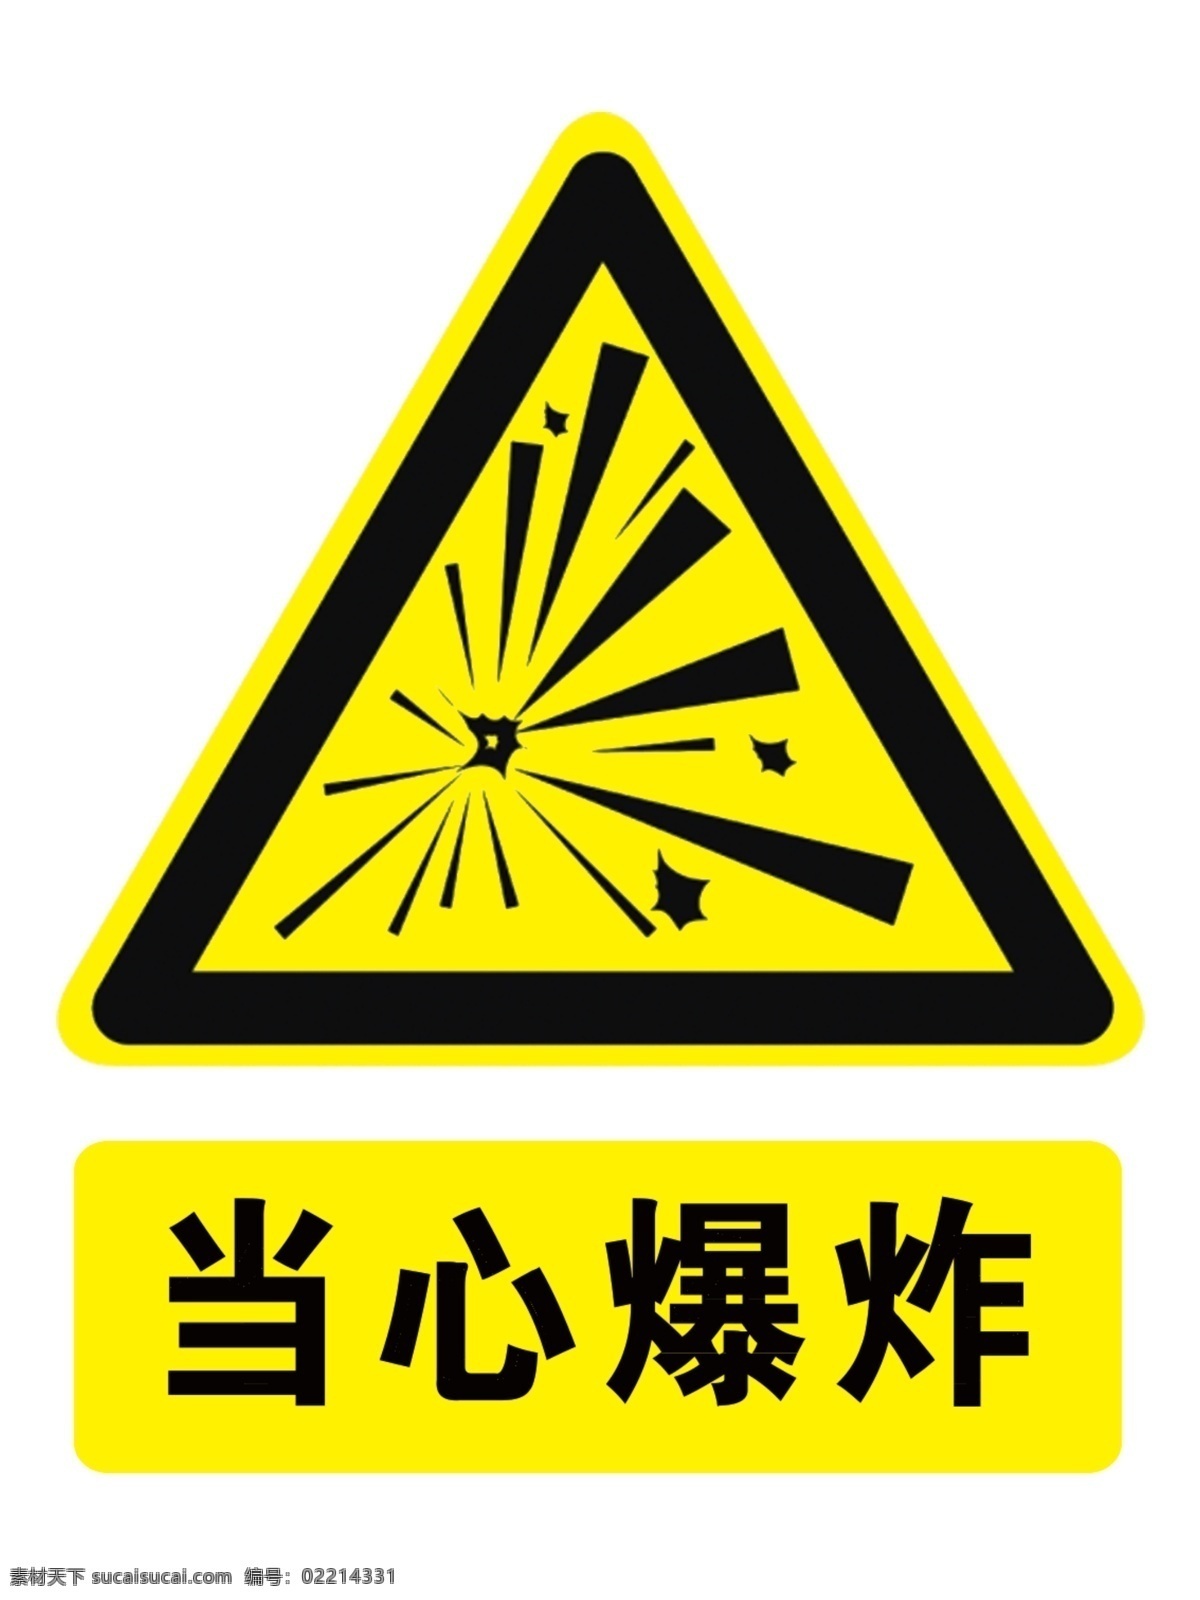 当心 爆炸 反光膜 当心爆炸反光 当心爆炸 标识 厂矿标识 安全标识 标志图标 公共标识标志